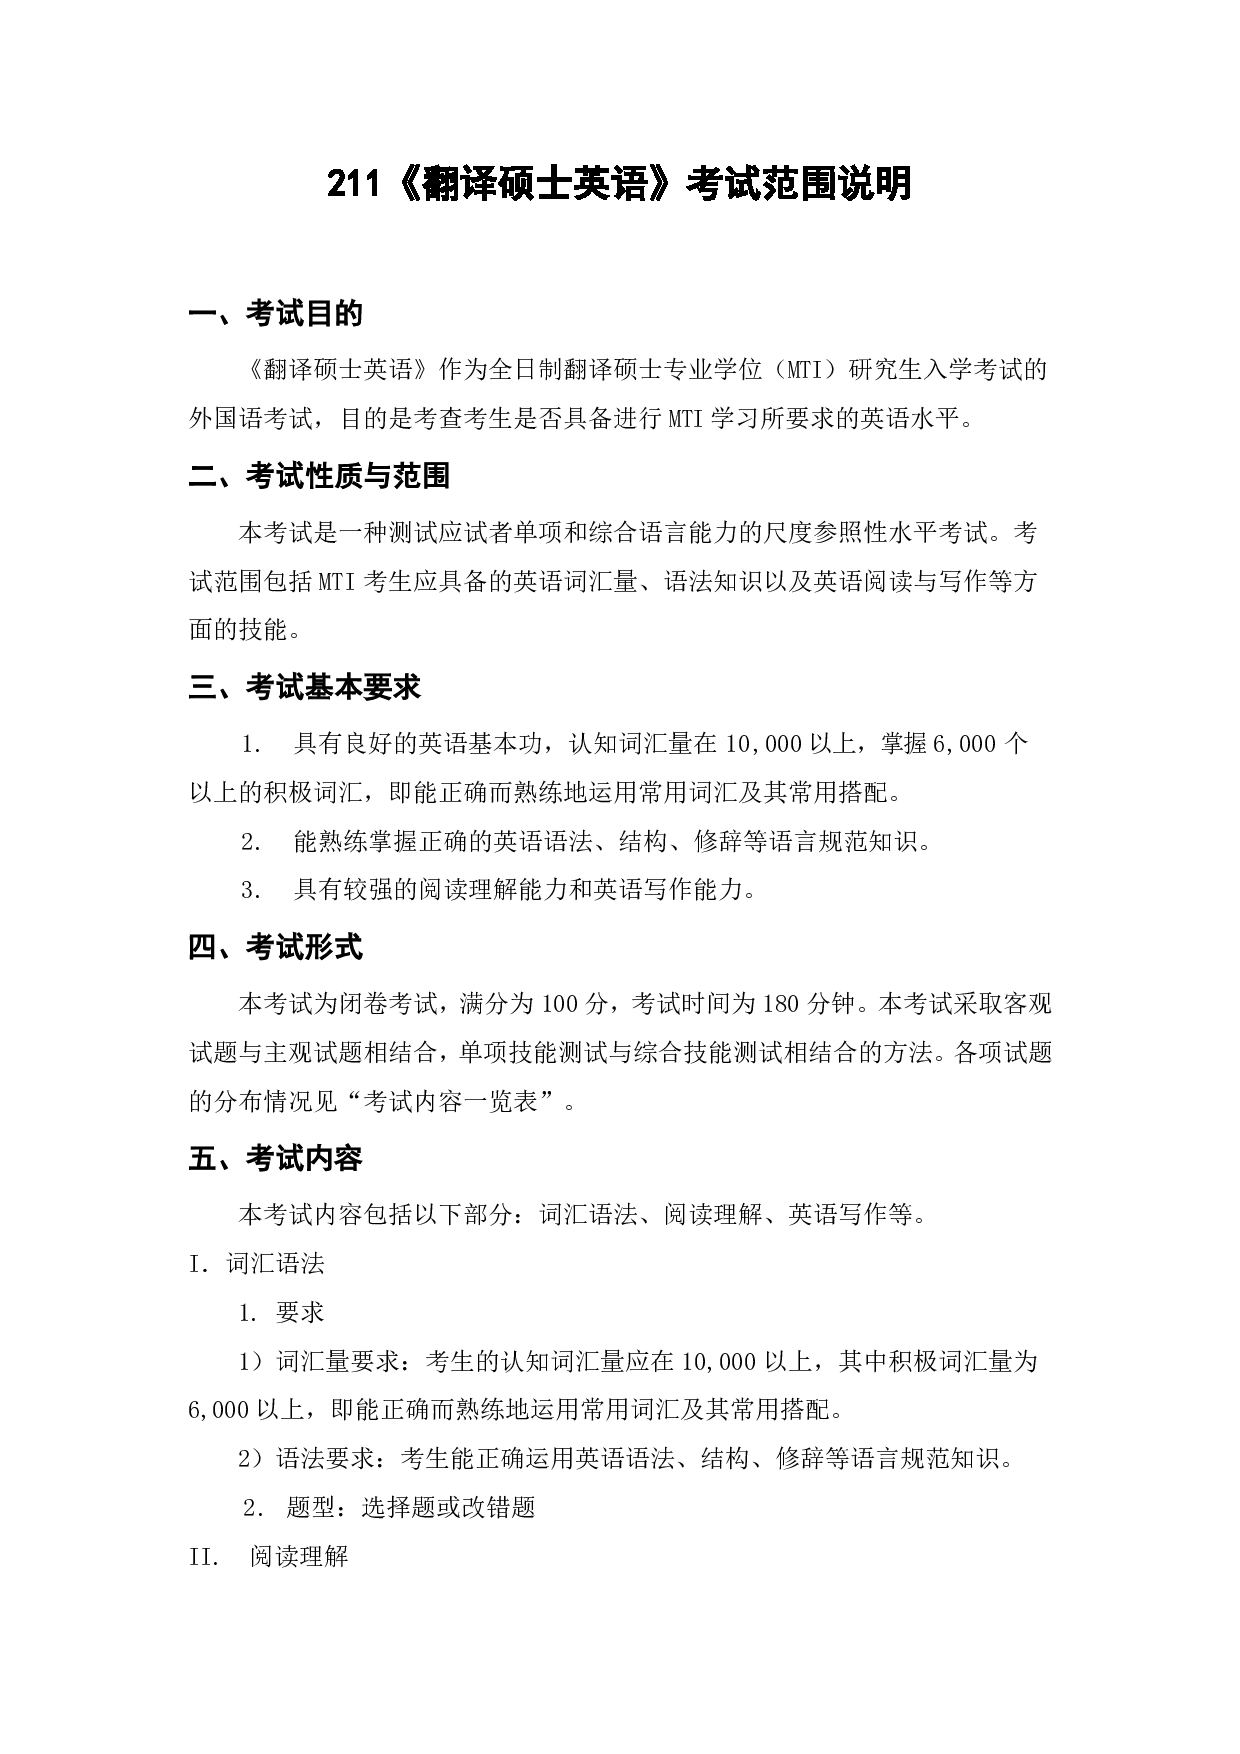 上海海洋大学2023年考研自命题科目 211《翻译硕士英语》 考试范围第1页